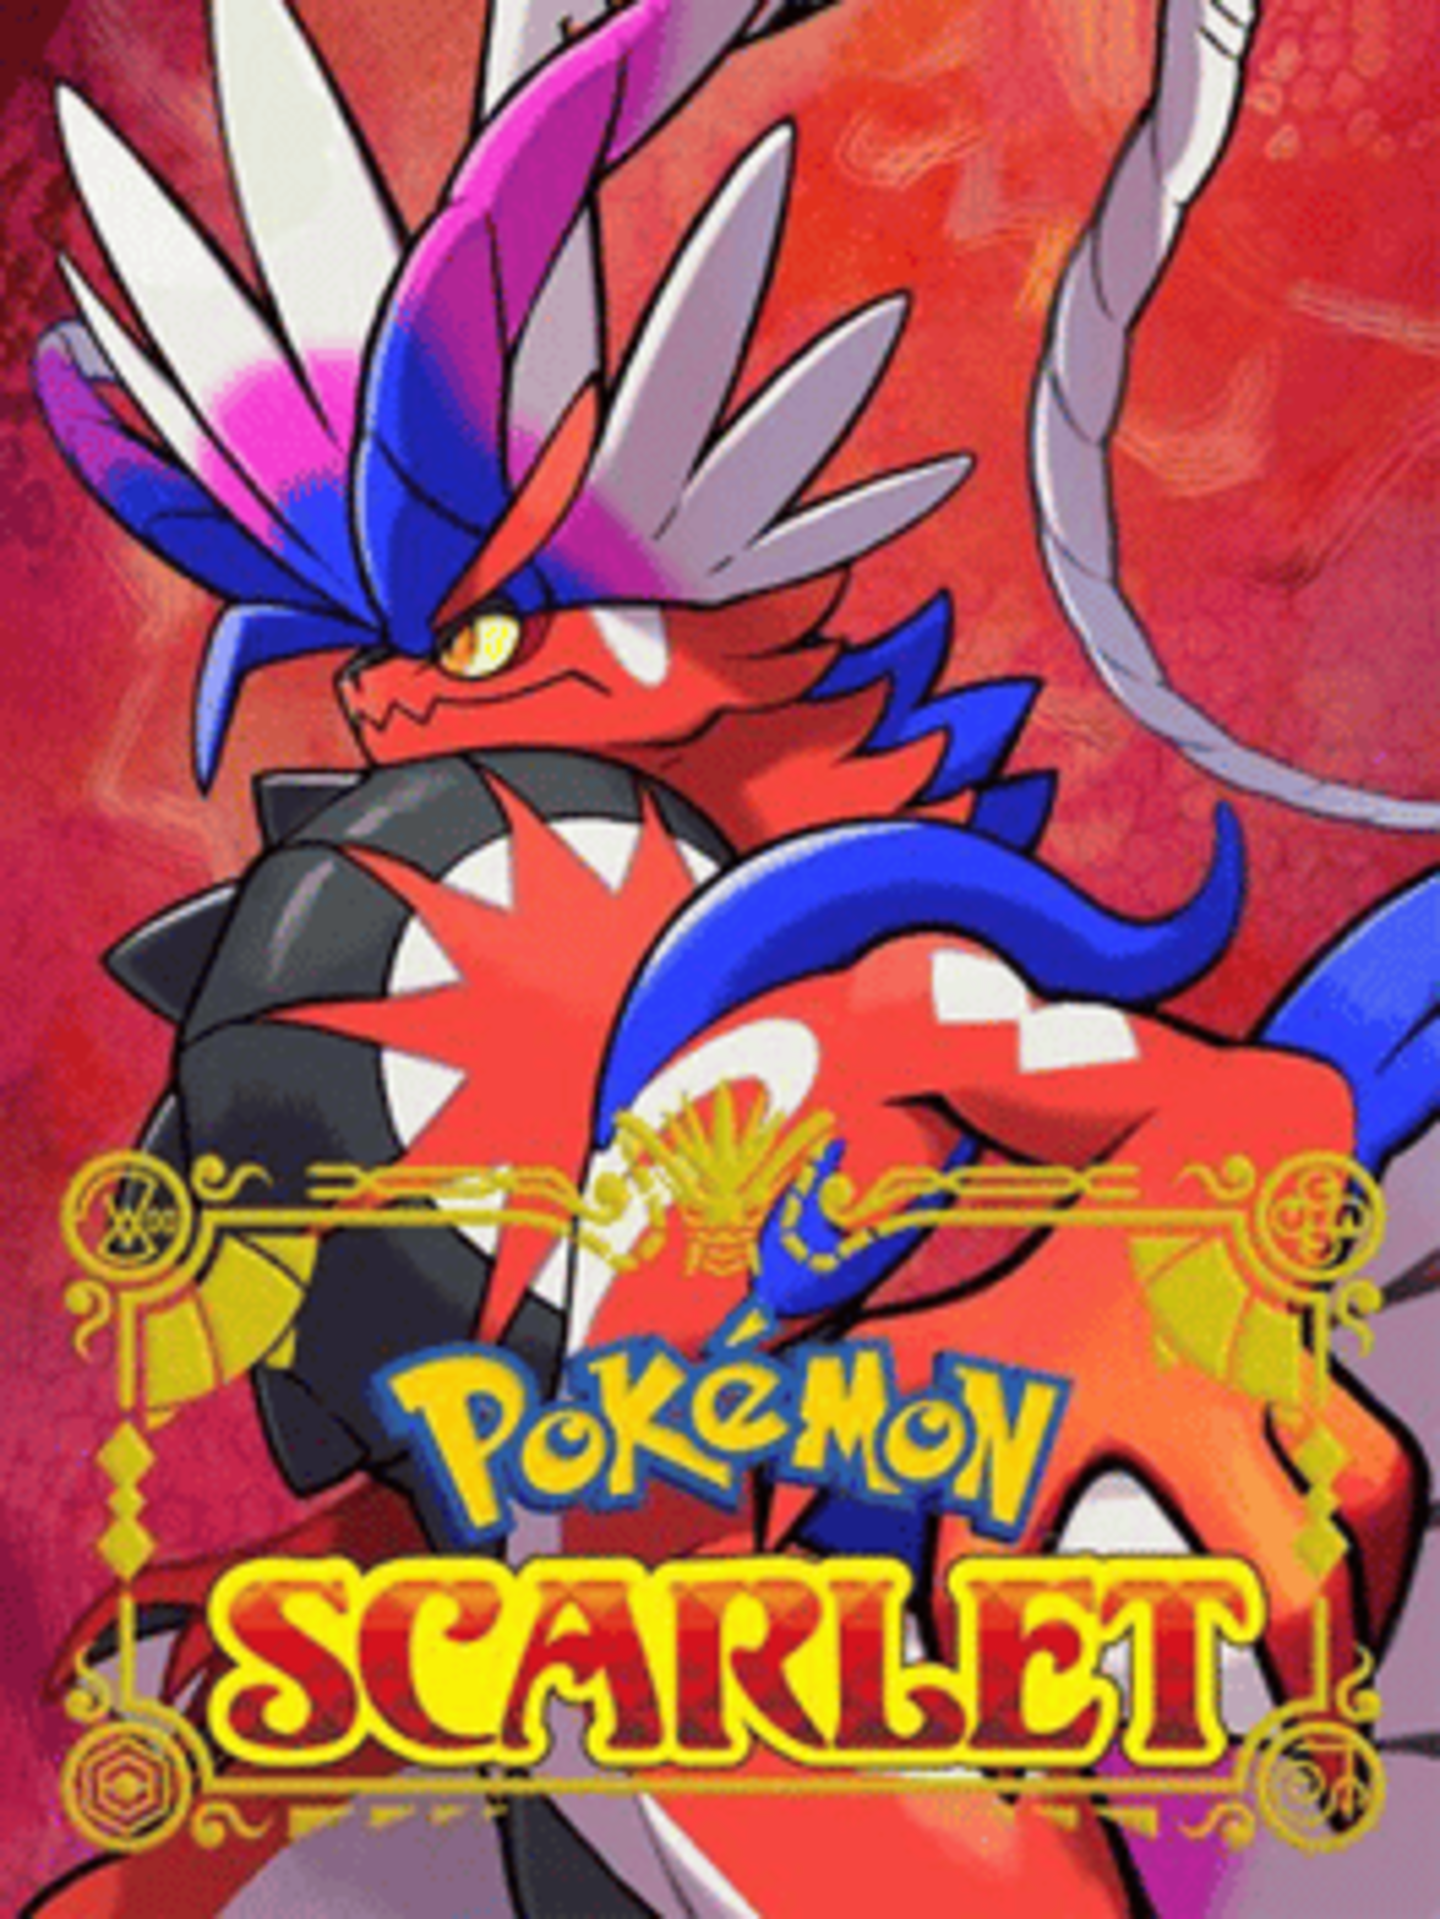 Guía completa de Pokémon Escarlata y Púrpura: trucos, consejos, cómo  evolucionar - Meristation